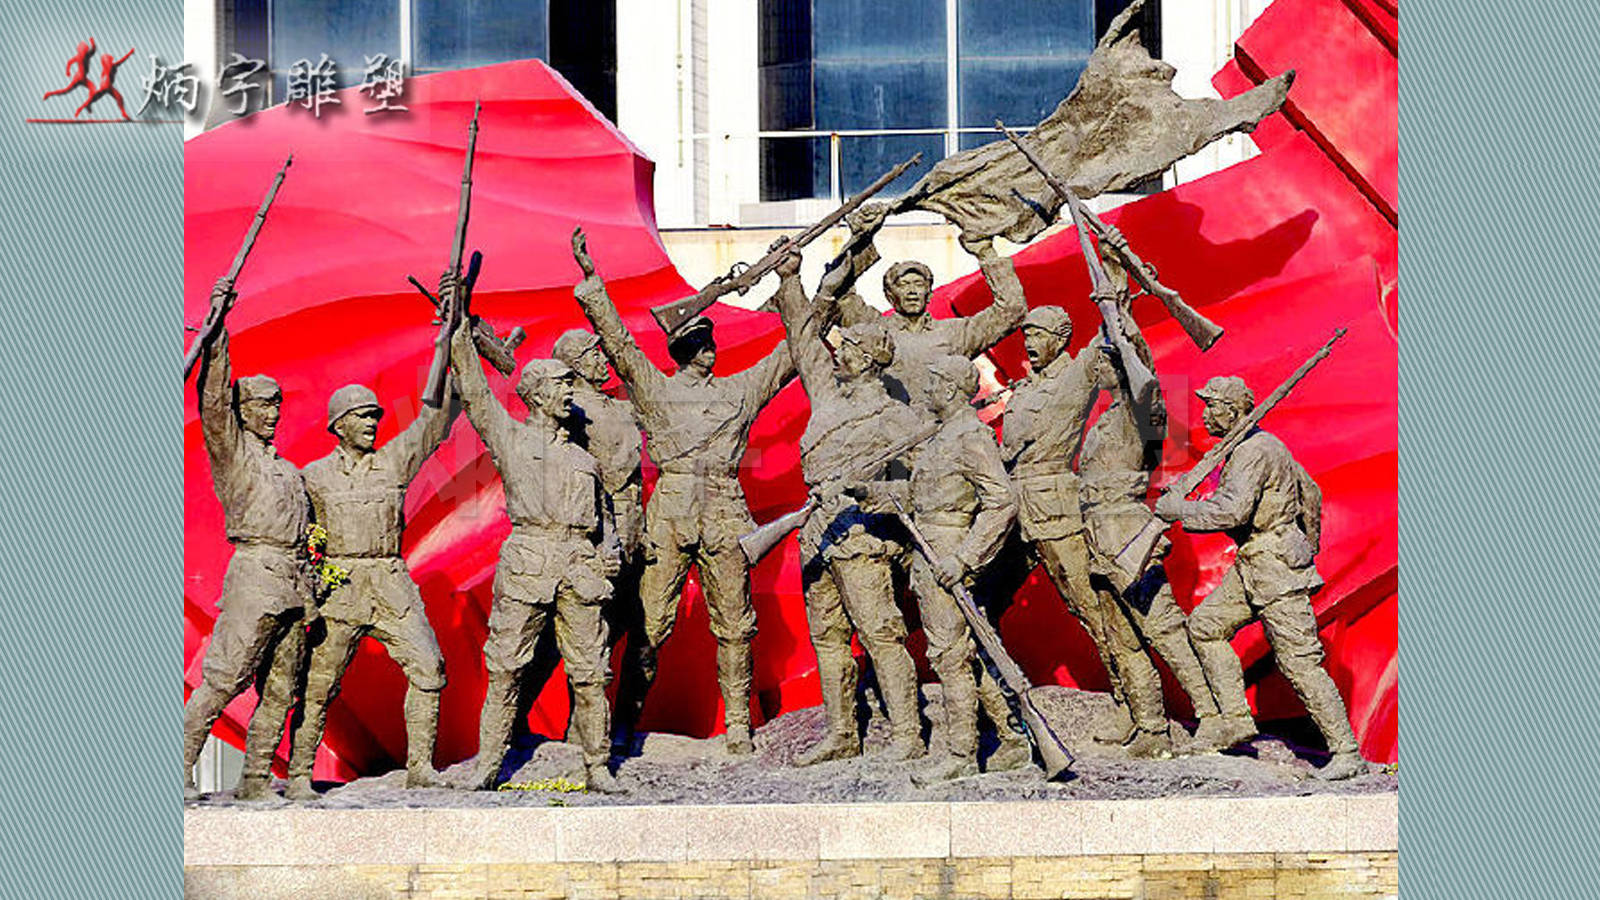 大型群雕塑,红色文化雕铜雕人物 红军雕塑,抗战英雄人物雕塑,红色文化